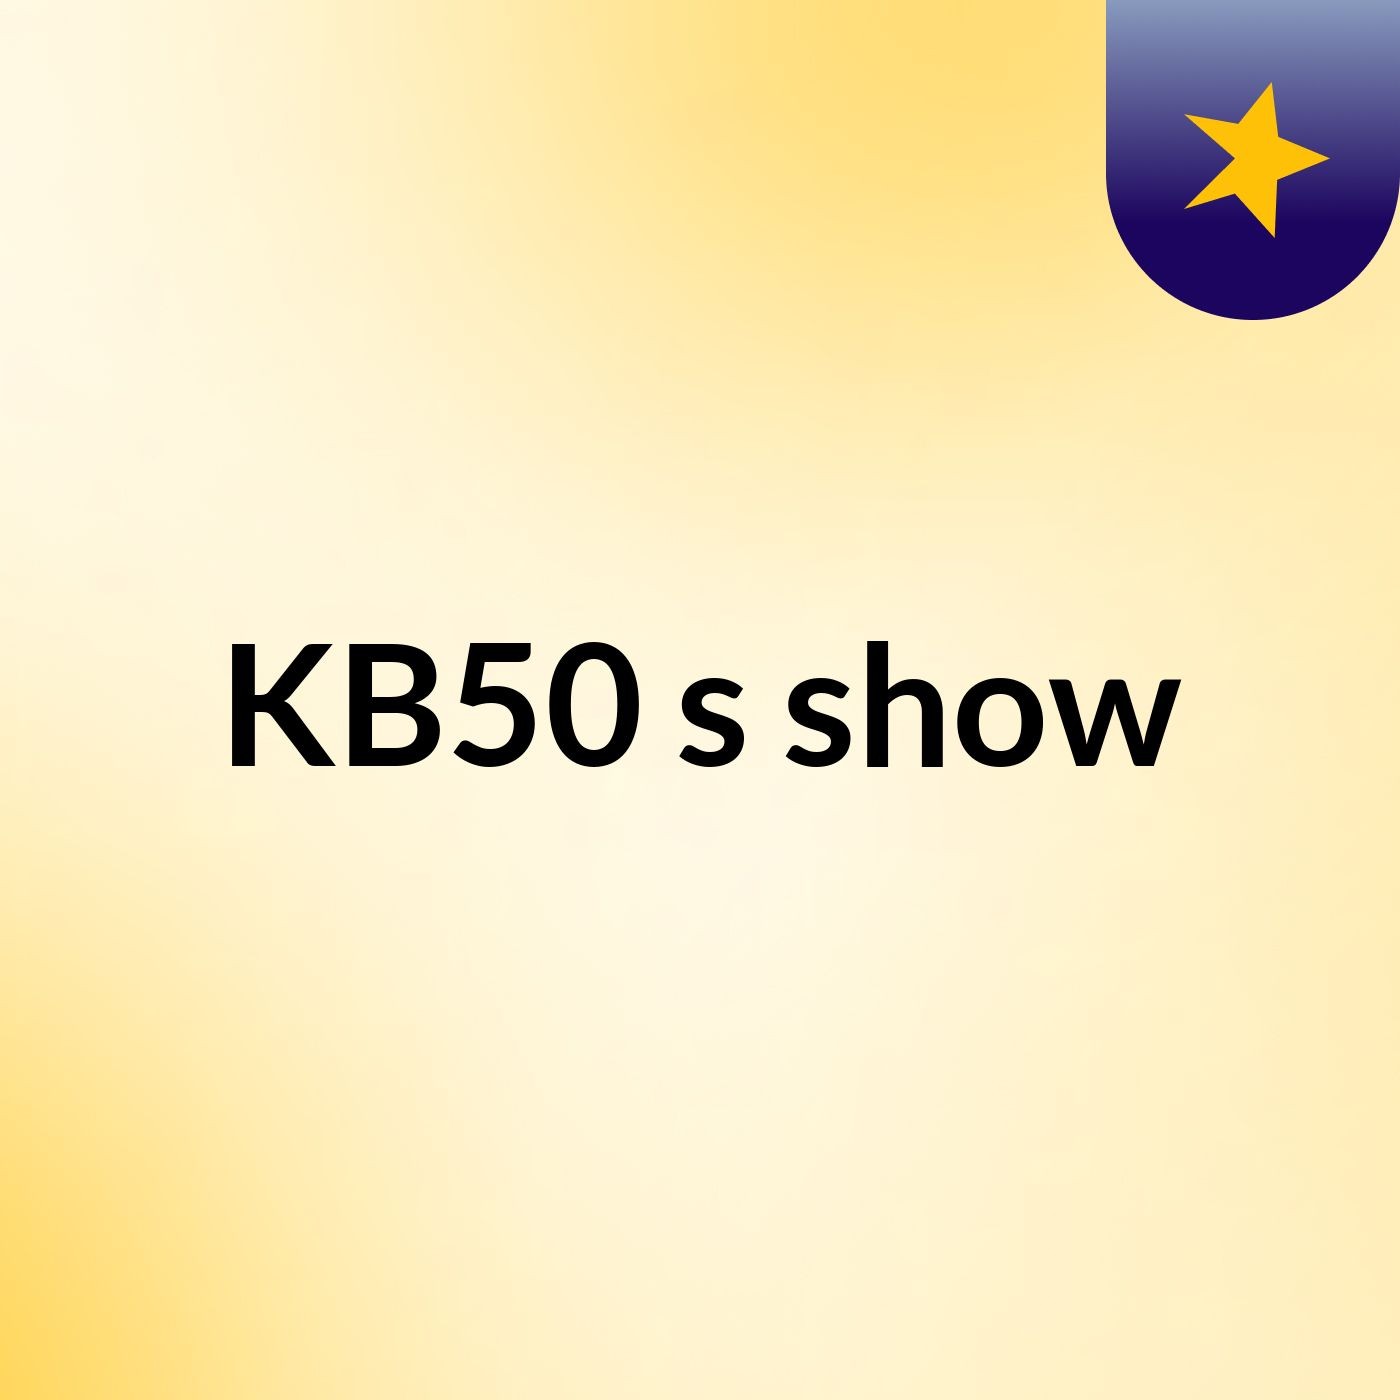 KB50's show